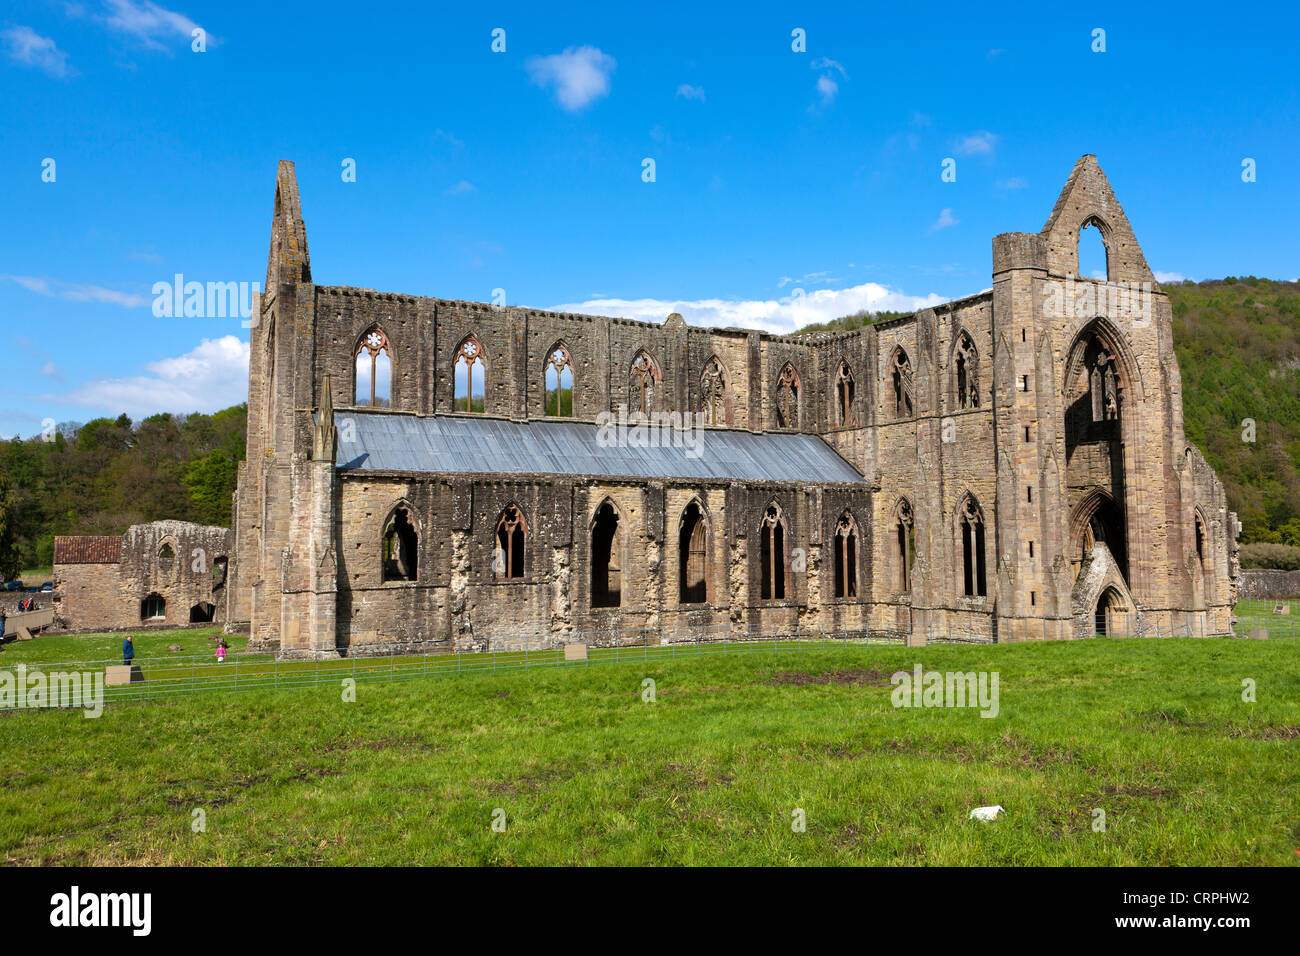 Las ruinas de la Abadía de Tintern, abadía cisterciense fundada en el siglo XII por Walter de Clare, Señor de Chepstow. Foto de stock